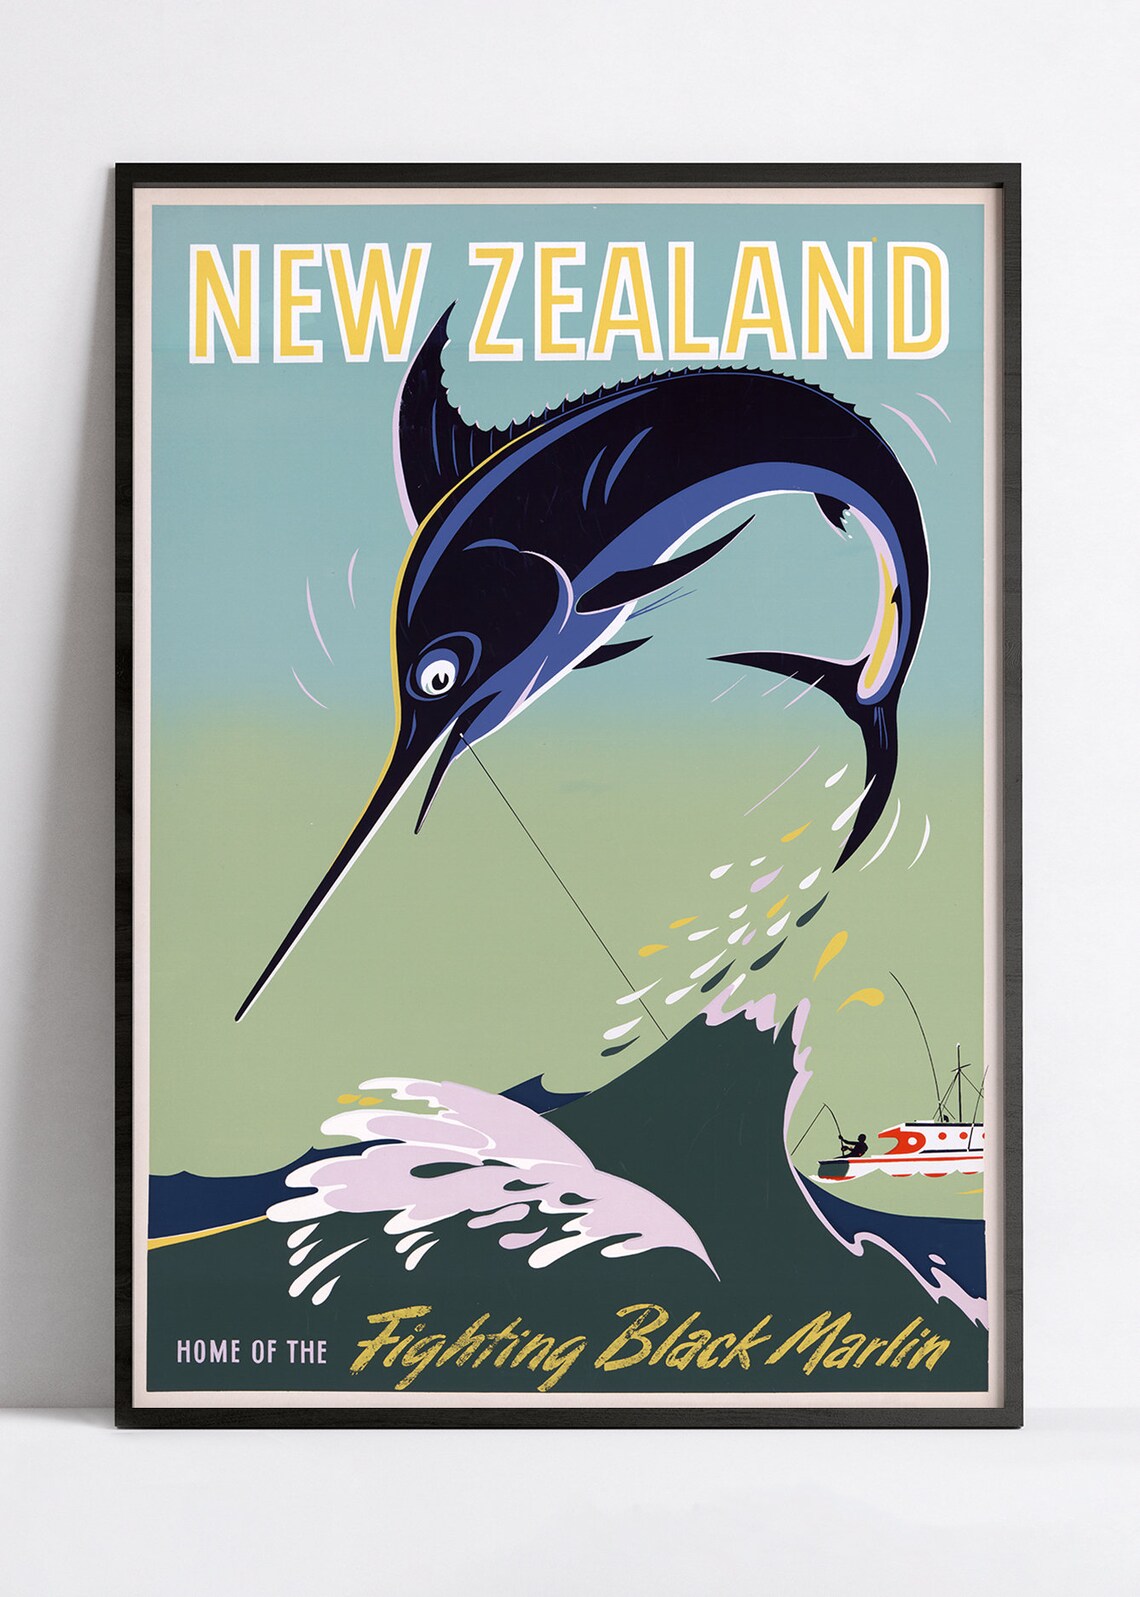 Affiche voyage vintage "New Zealand"  Office du Tourisme - Haute Définition - papier mat 230gr/m²